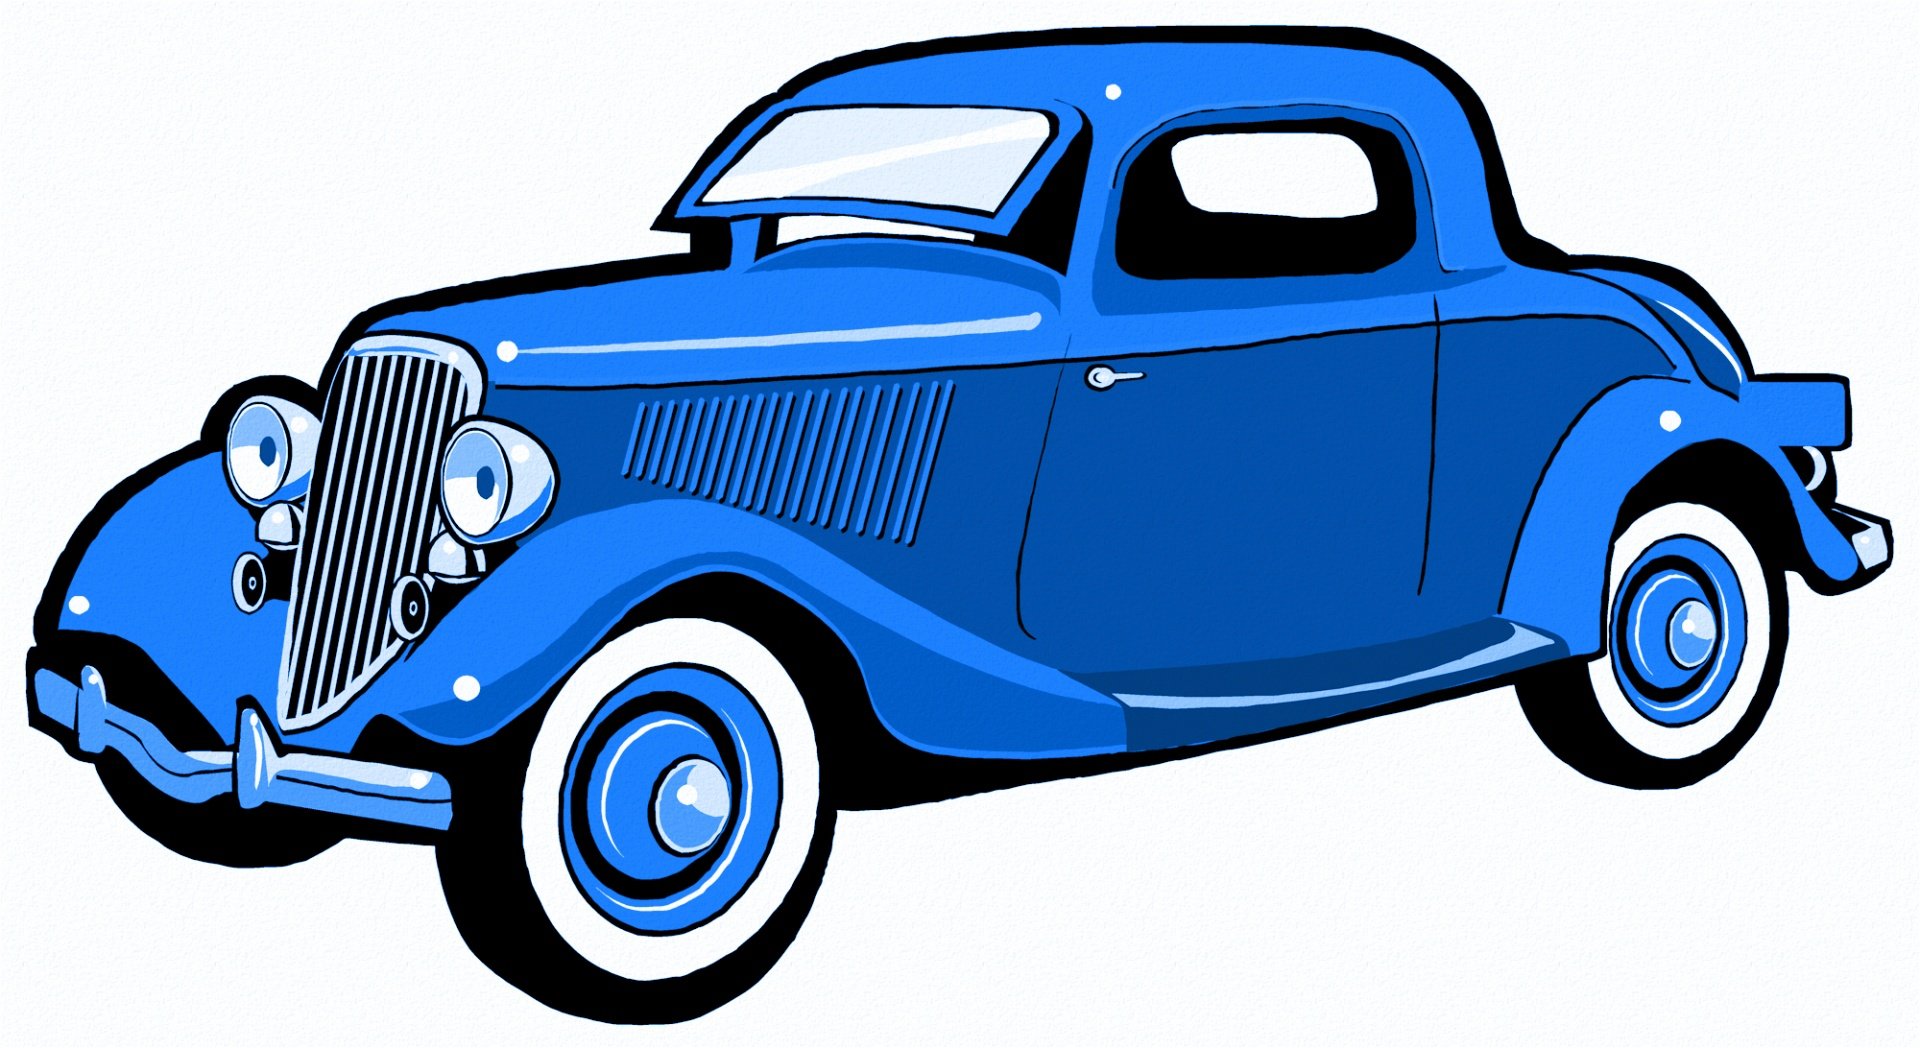 Синяя машинка для детей. Синяя машина для детей. Легковой автомобиль картина для детей. Машинка синего цвета. Машинка рисунок.